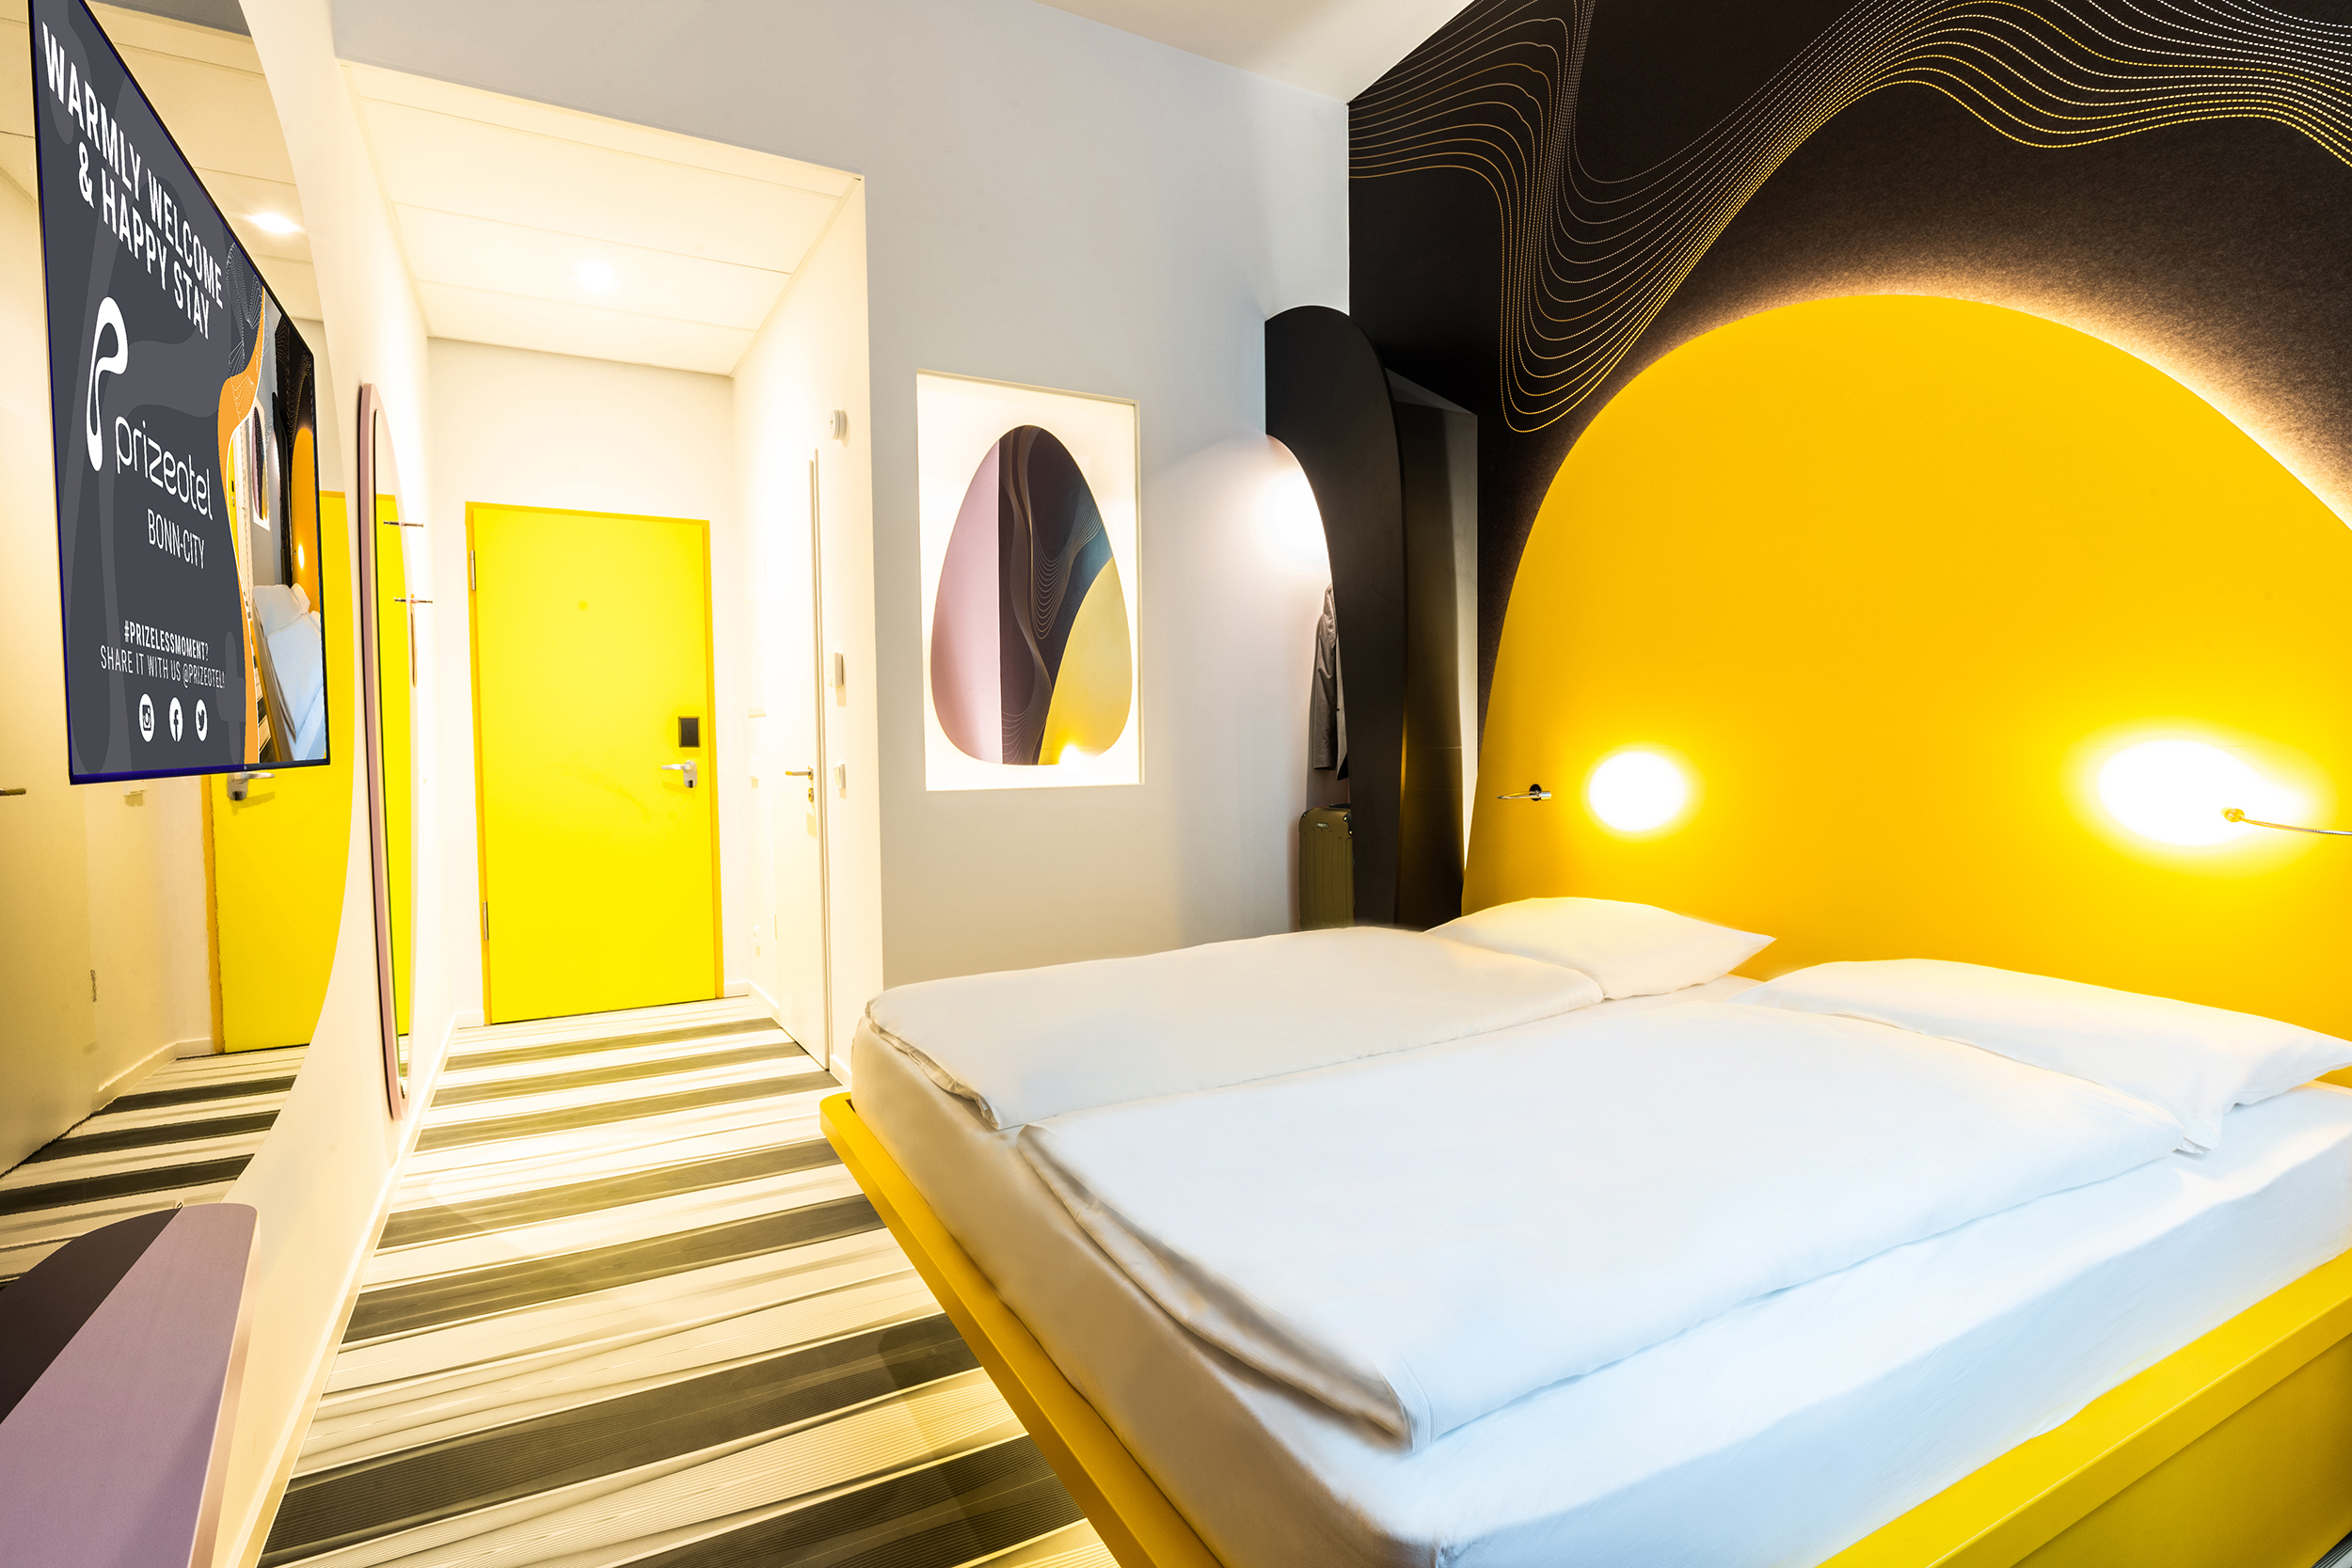 Ein gemütliches Hotelzimmer in Gelbtönen im Prizeotel Bonn-City